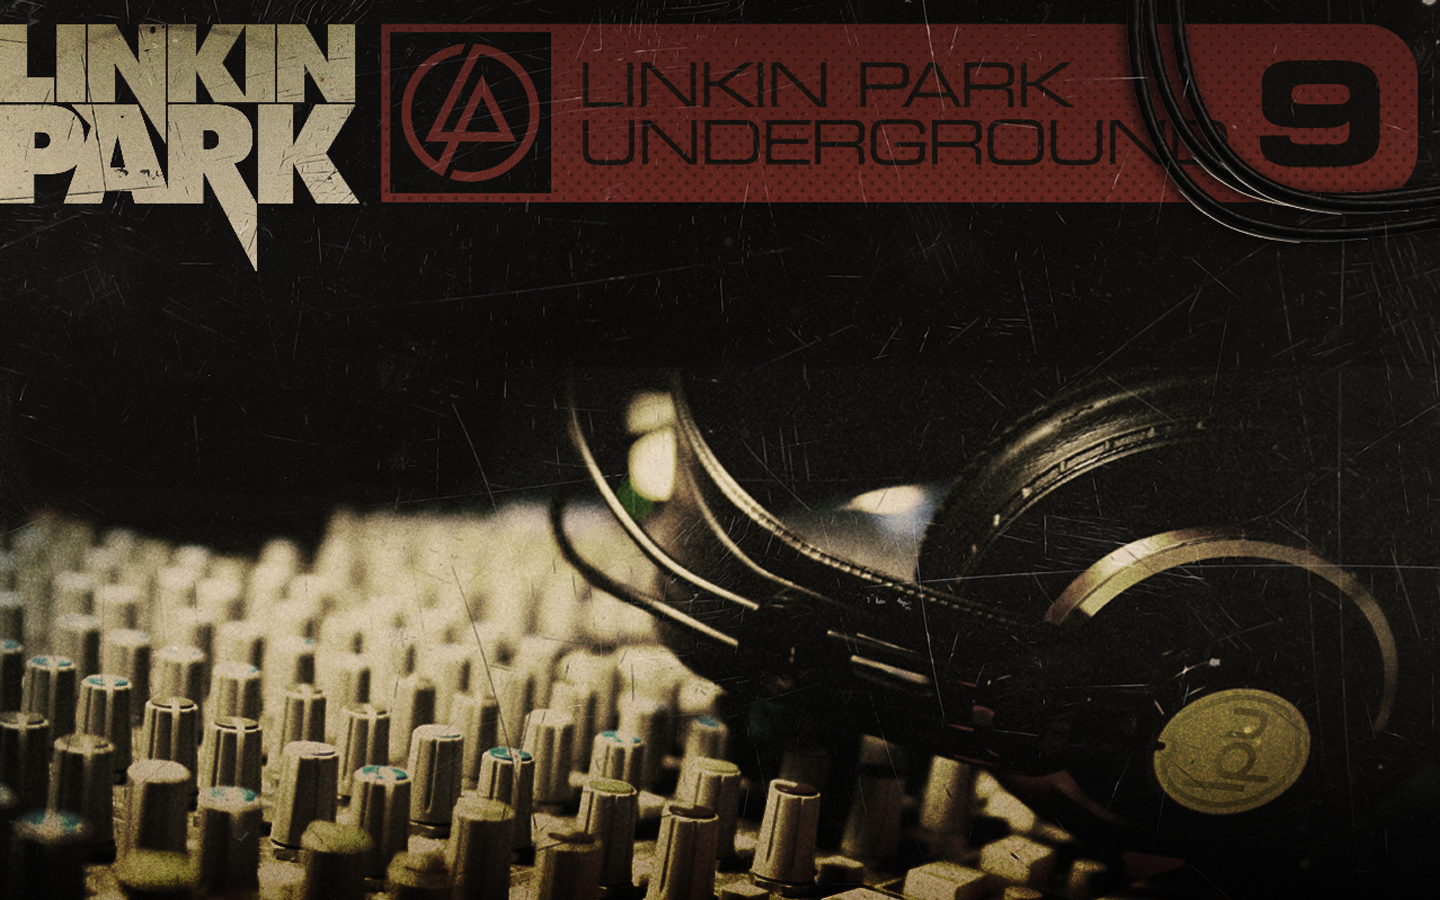 Linkin park demos. Linkin Park Underground 9. Linkin Park Underground 9 LP. Linkin Park Underground 11. Linkin Park Underground 4.0.